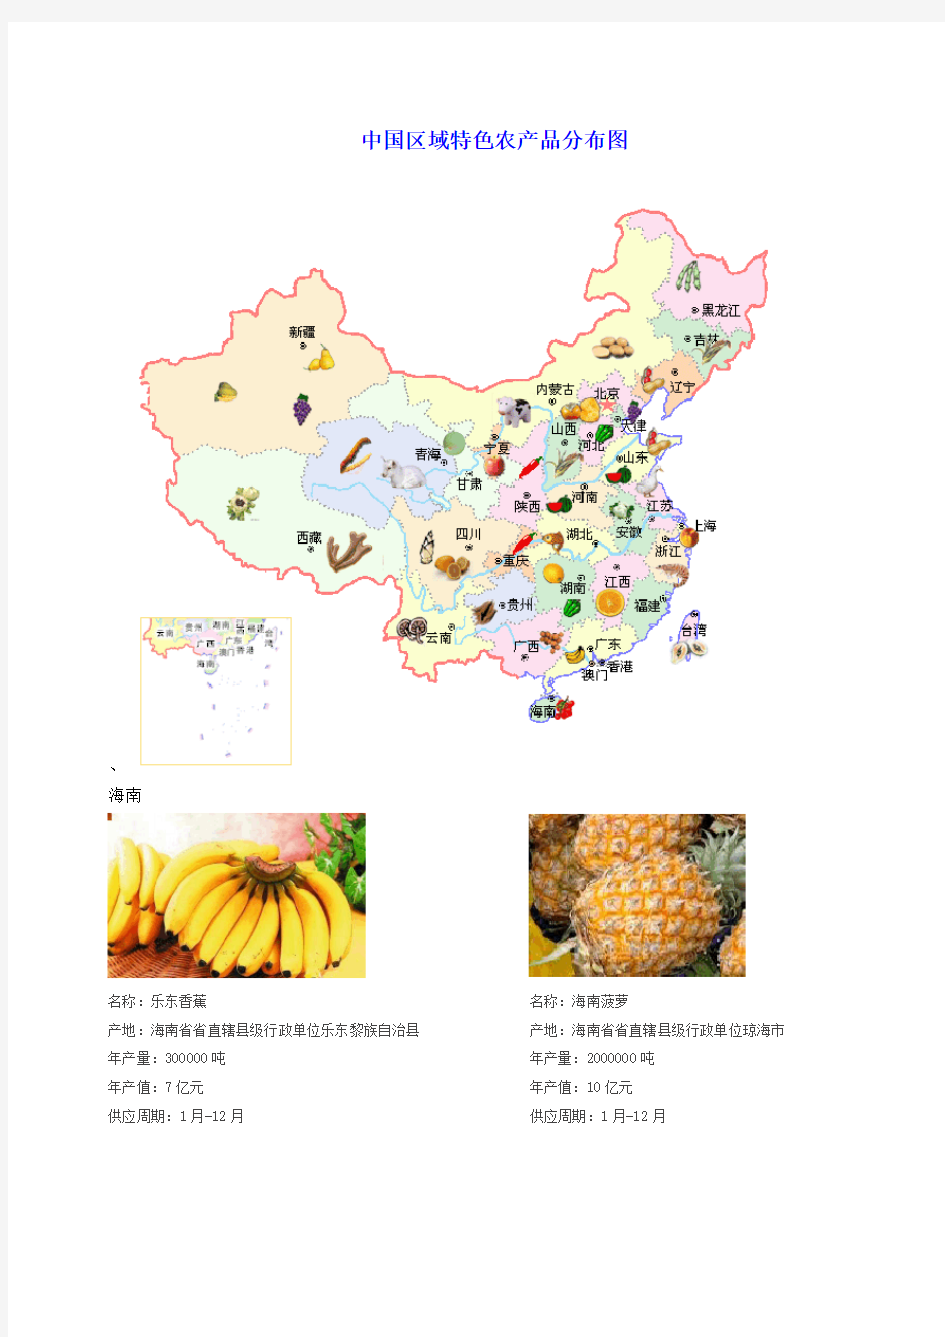 中国区域特色农产品分布图